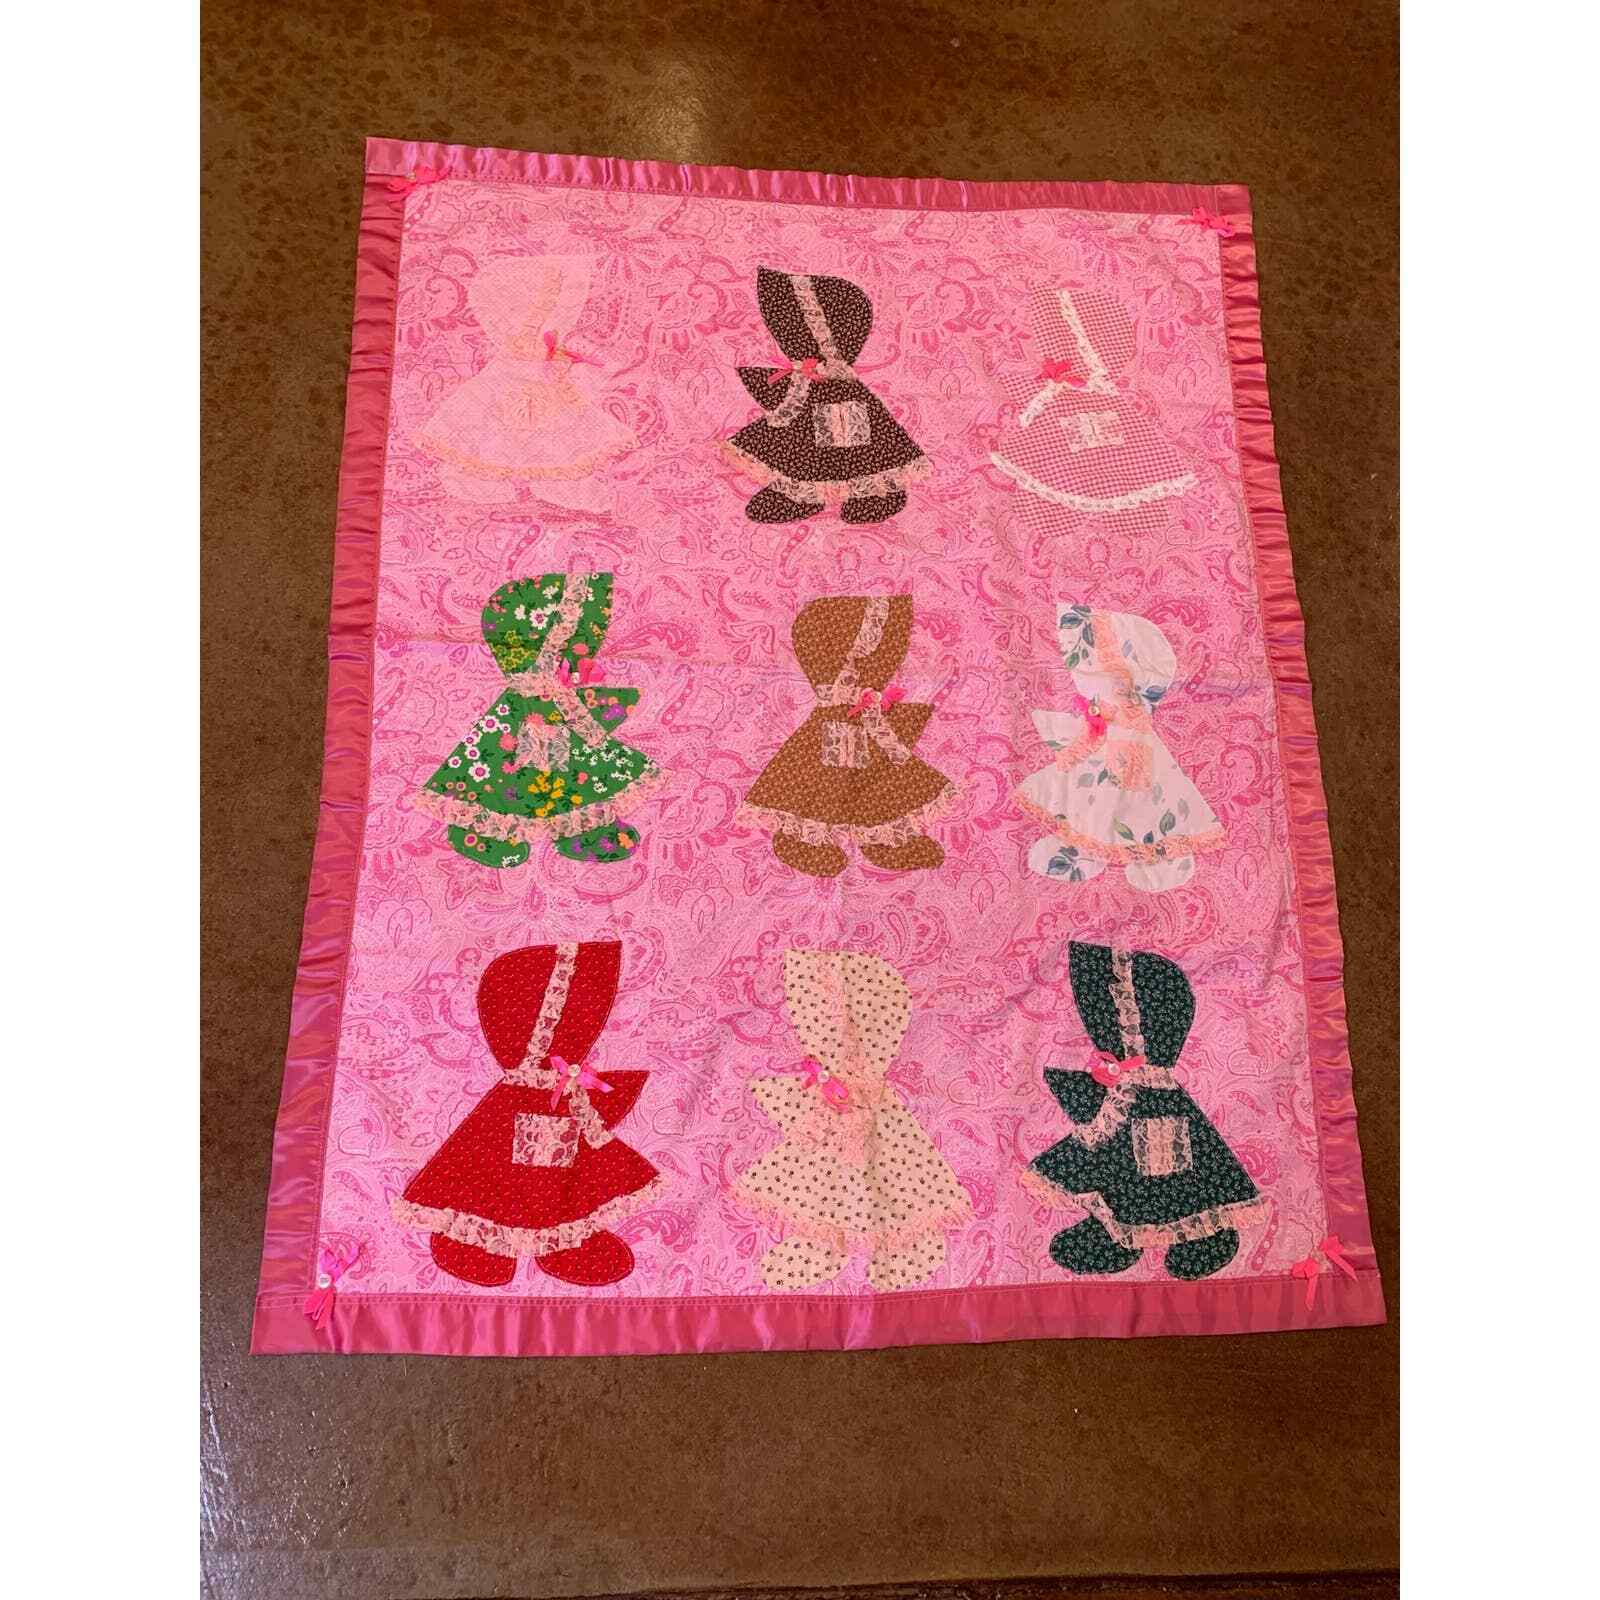 Sunbonnet Sue Quilt Baby Blanket Pink Patchwork 44 x 53 Satin Handmade Vintage